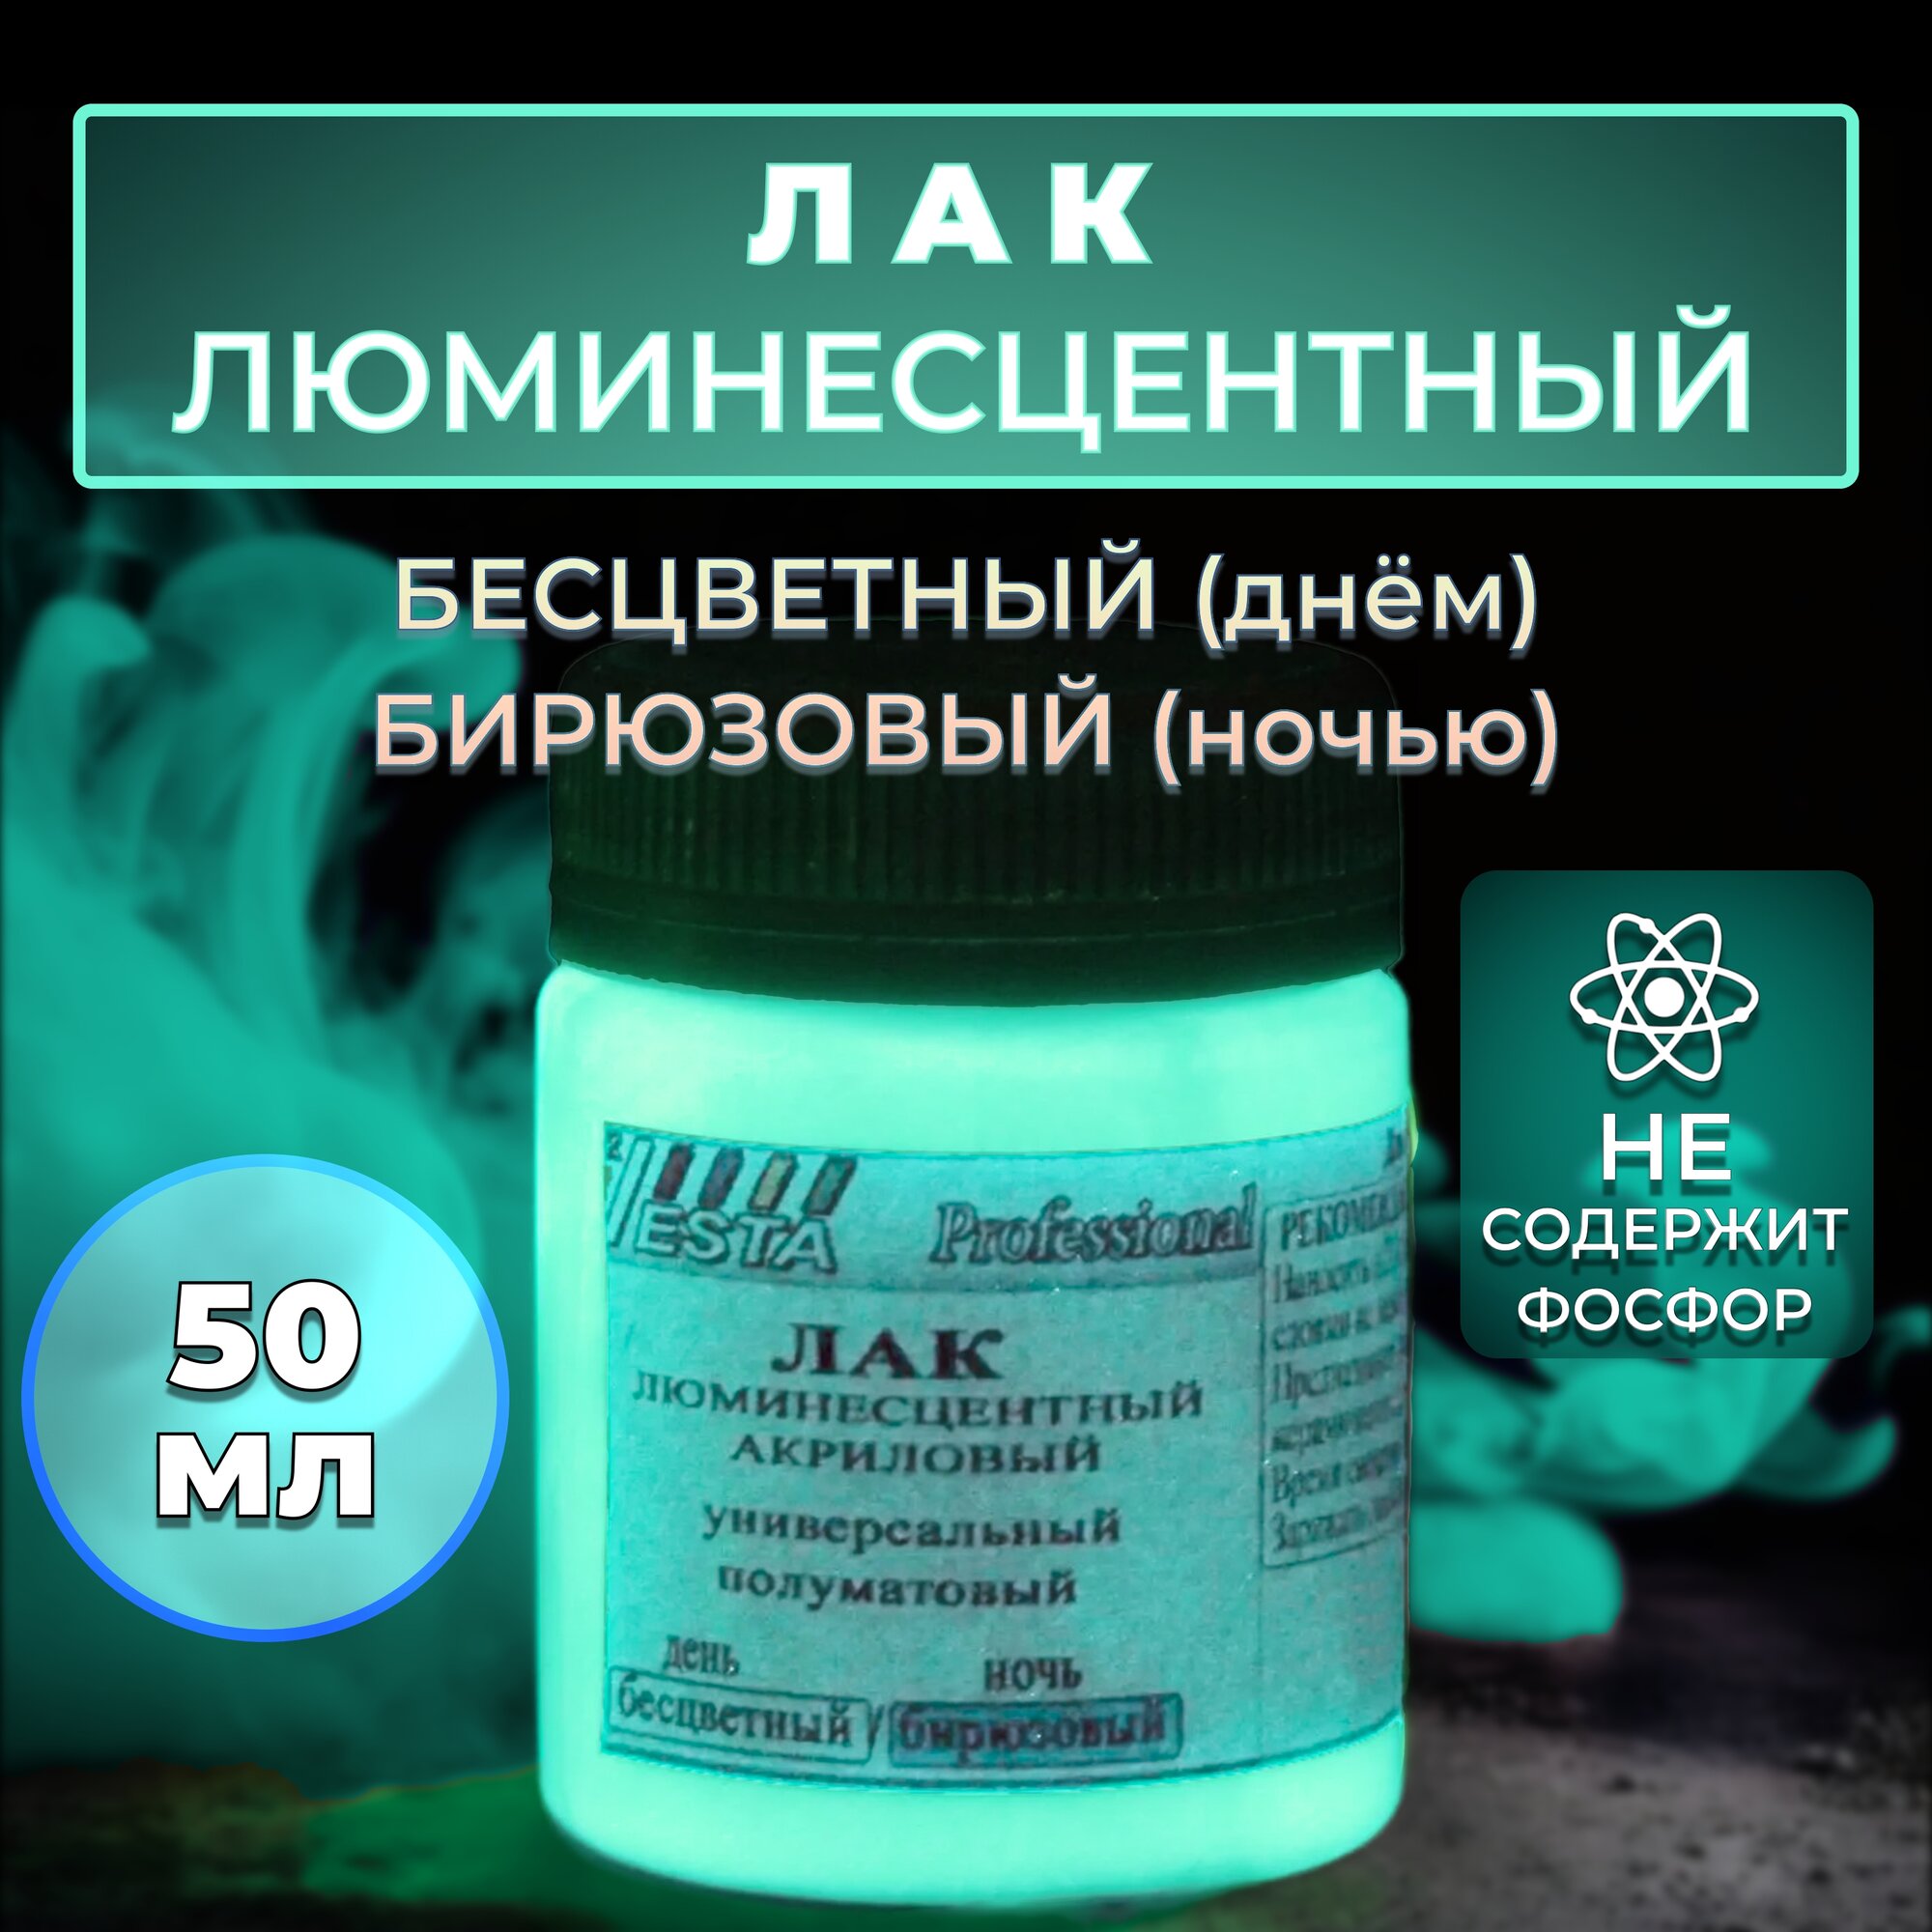 Лак люминесцентный "VESTA PROFESSIONAL" бесцветный / бирюзовый (день / ночь) - 50 мл